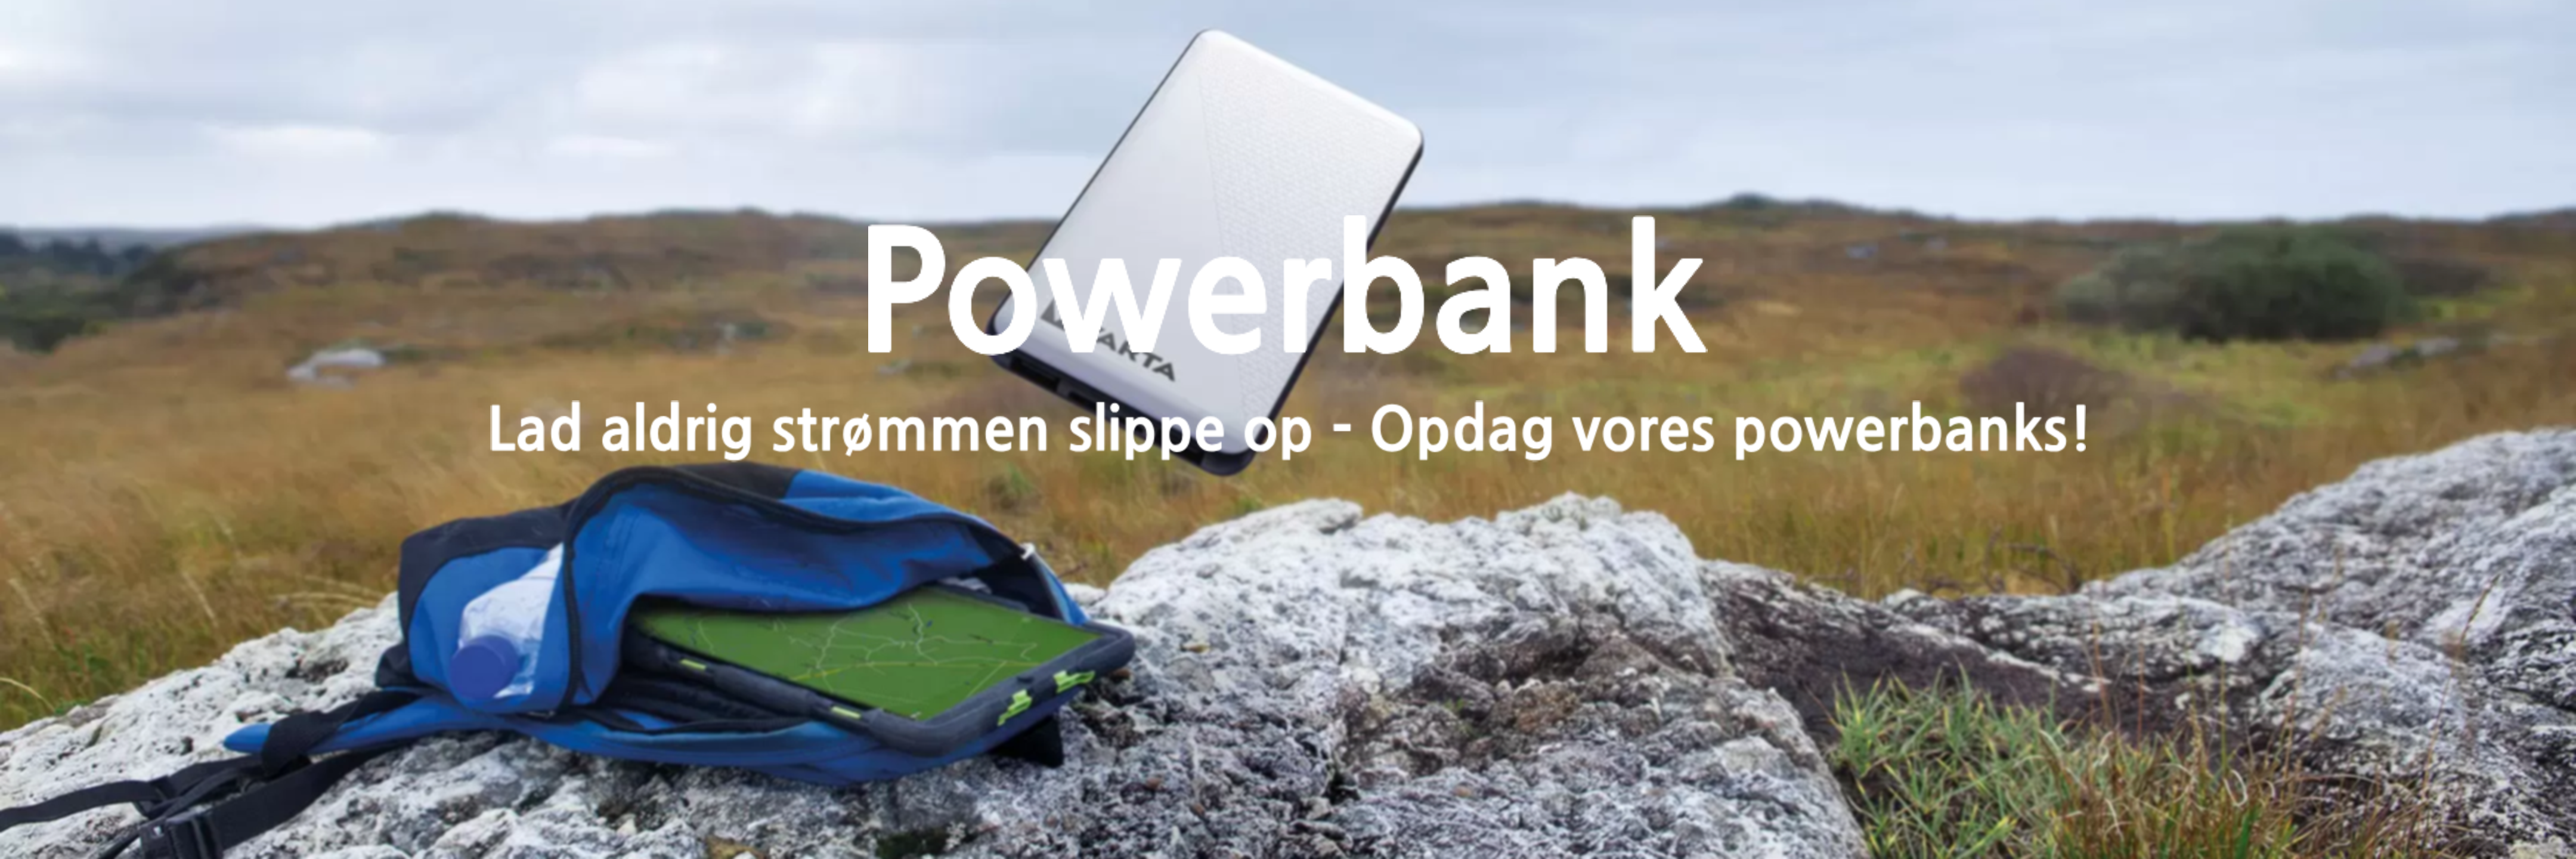 Powerbank, banner image